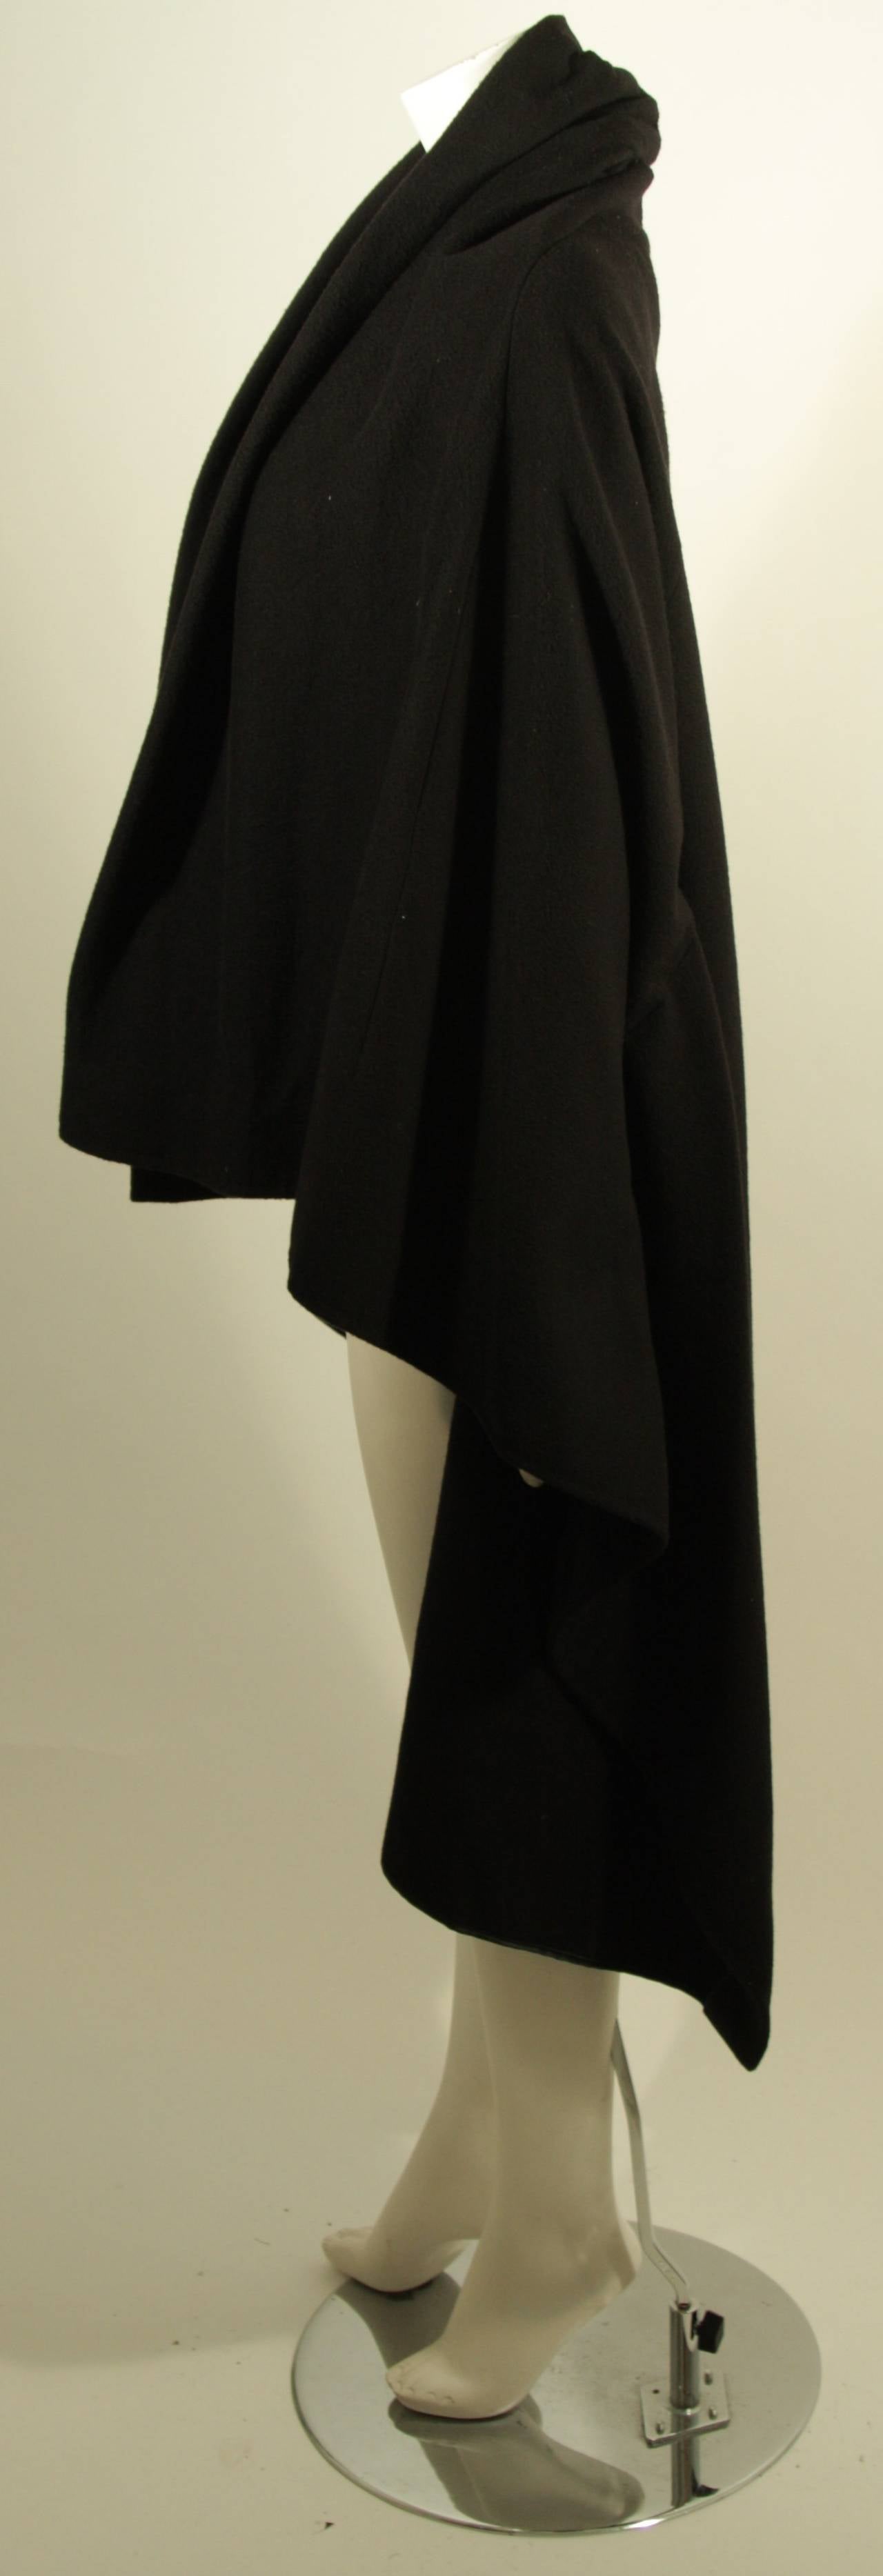 Women's Maison Martin Margiela Black Wool Cape Coat